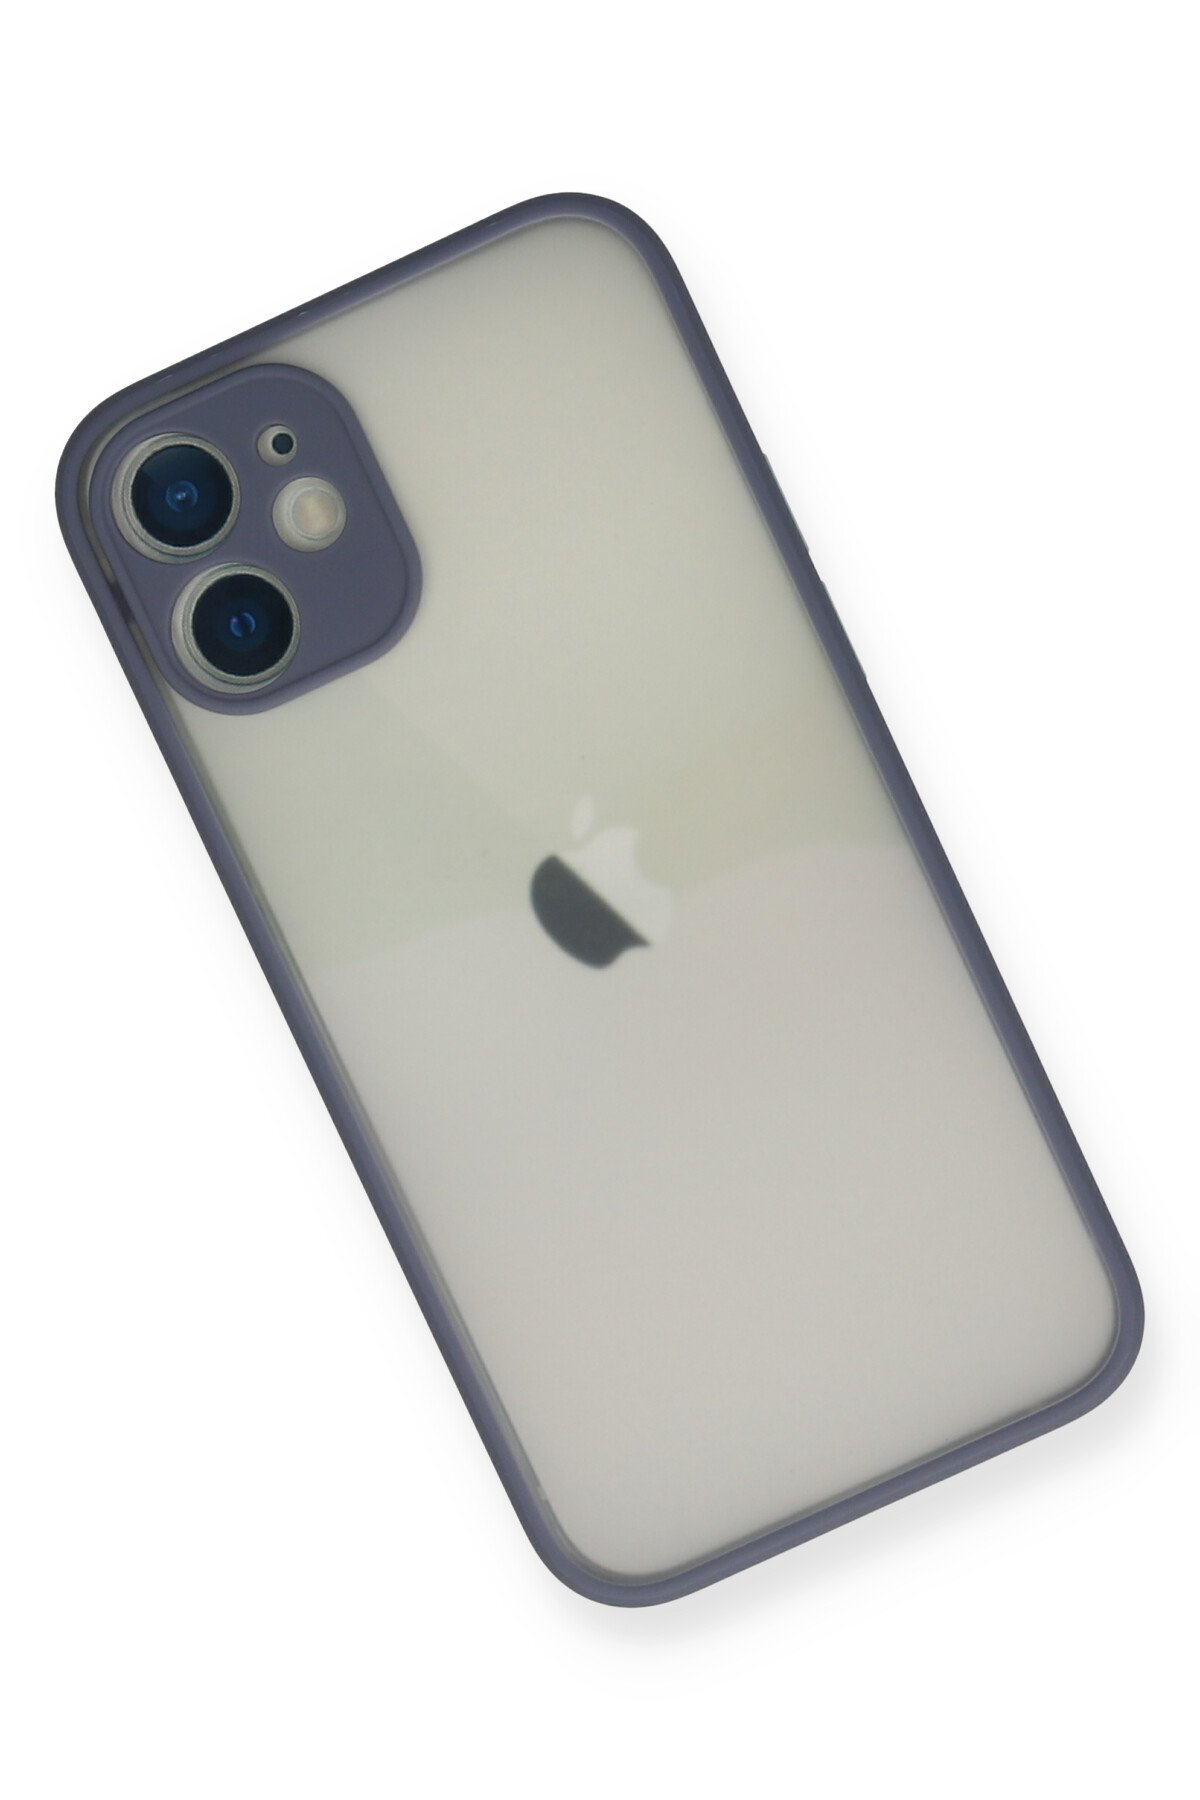 Newface iPhone 12 Kılıf PP Ultra İnce Kapak - Mavi